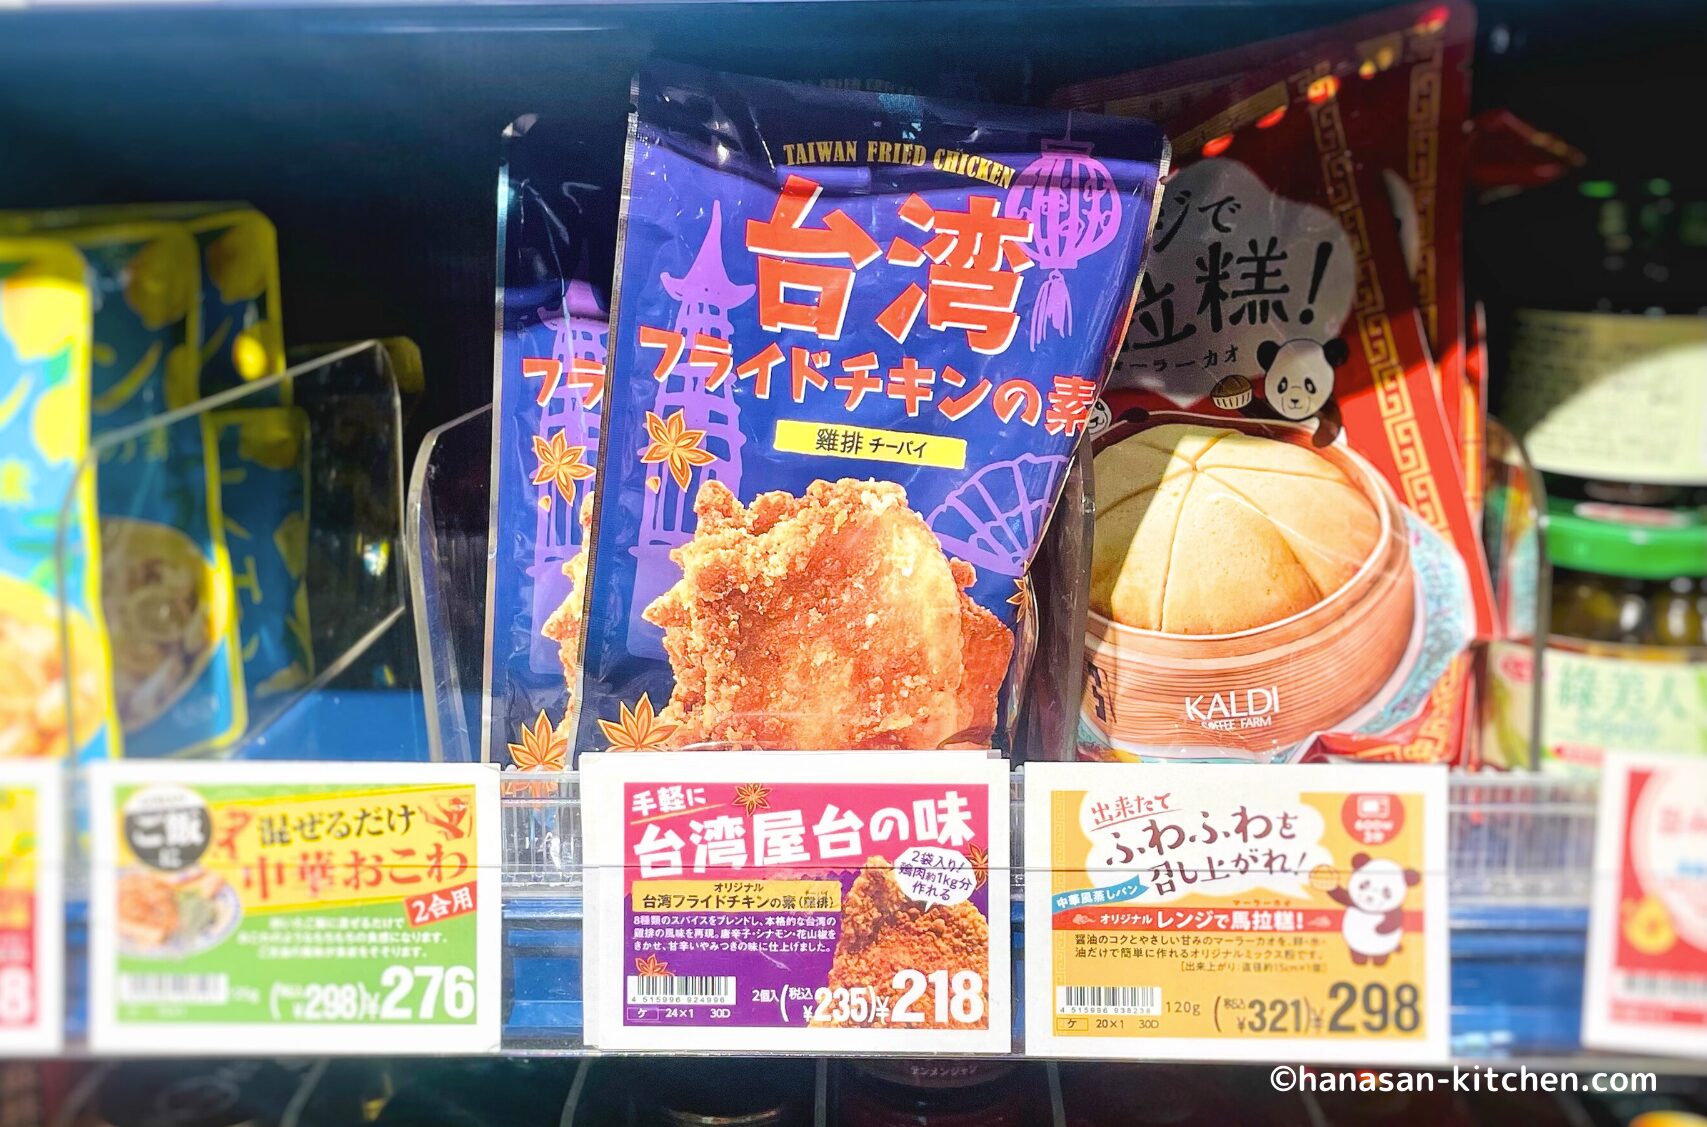 カルディで販売されている台湾フライドチキンの素